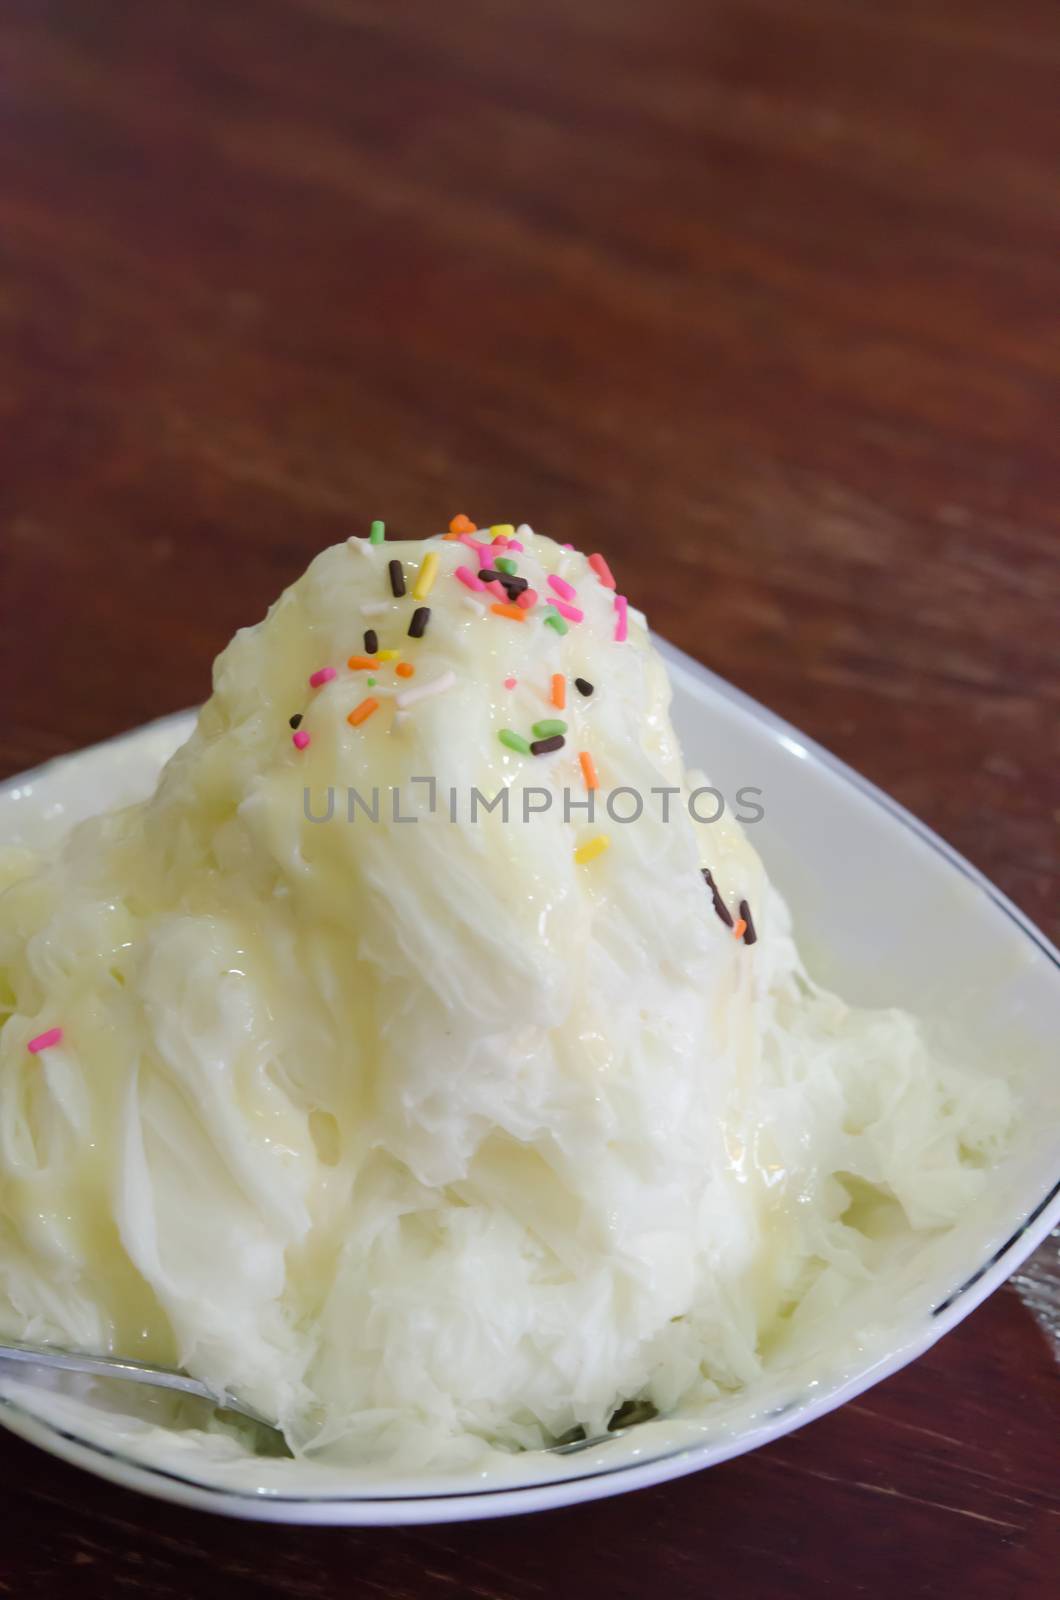 creamy vanilla ice cream in a white plate